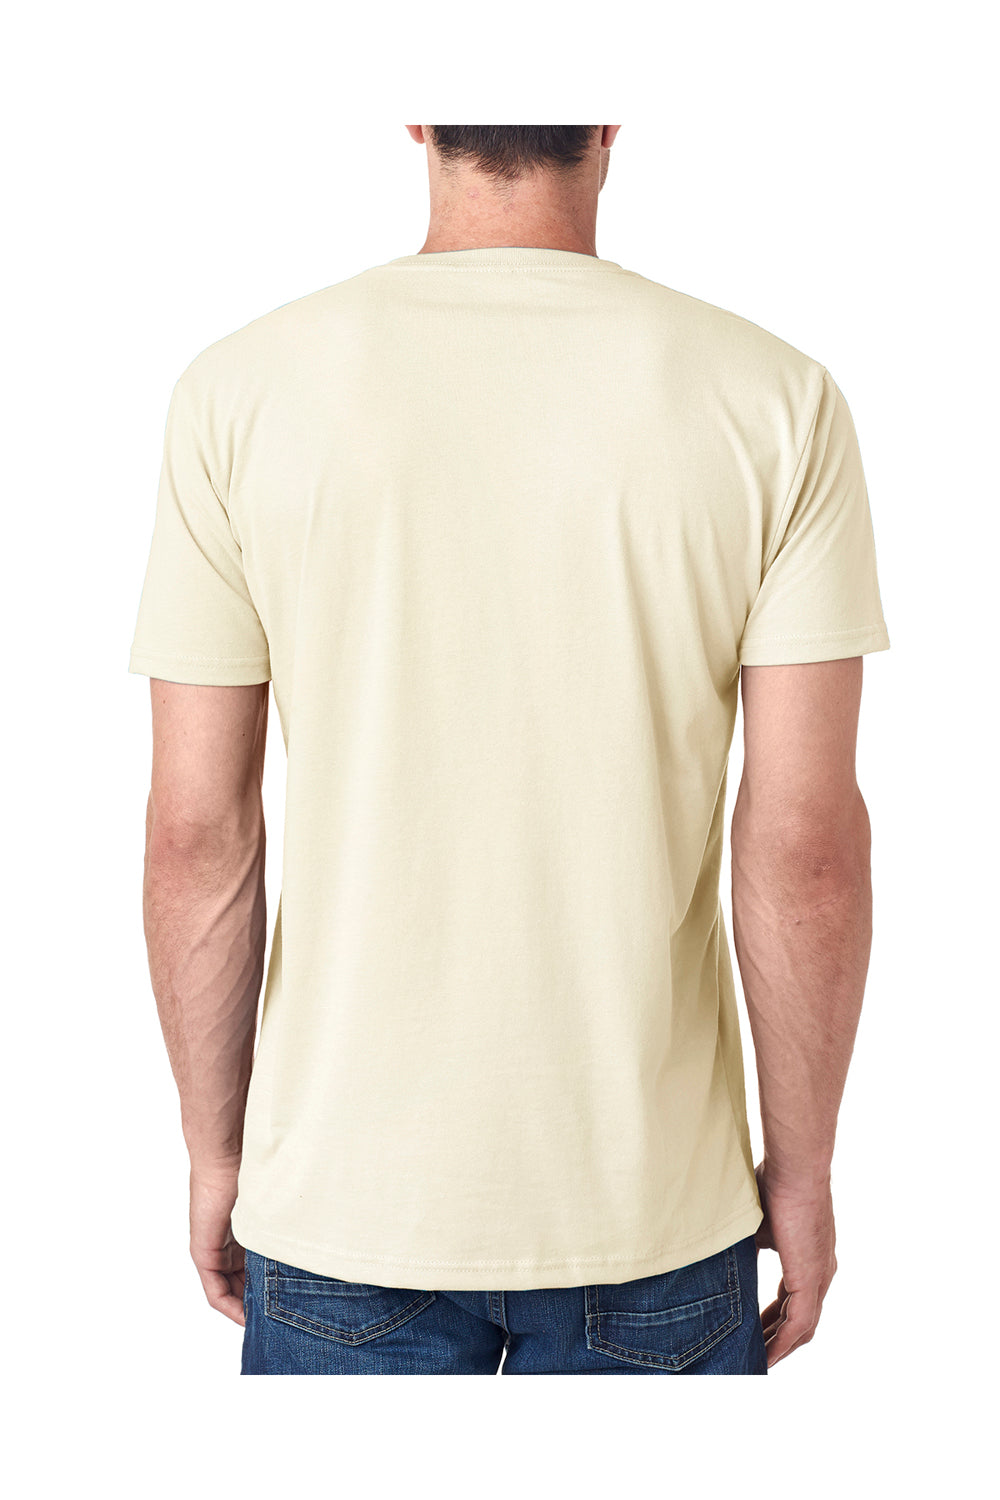 Next Level 6440 Mens Sueded Jersey Short Sleeve V-Neck T-Shirt Natural Back